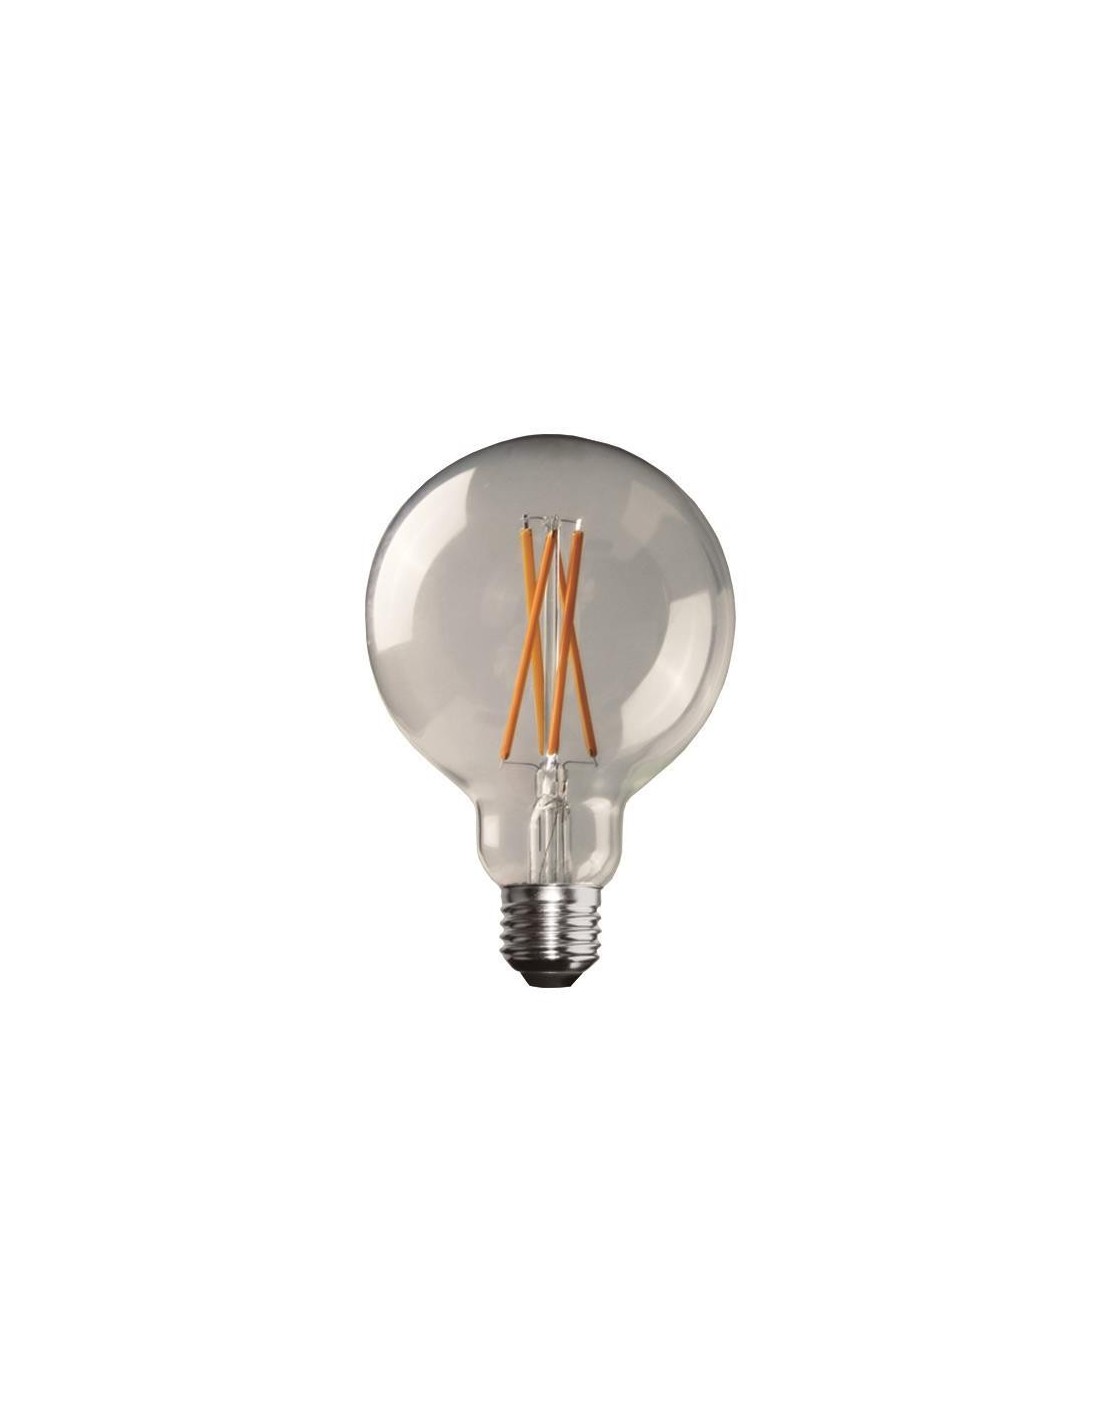  KCO Lighting - Bombillas LED G95 con base E26, bombillas  redondas esféricas LED regulables de 110 V, bombillas de luz blanca suave  de 4.5 W, acabado transparente, paquete de 4 unidades 